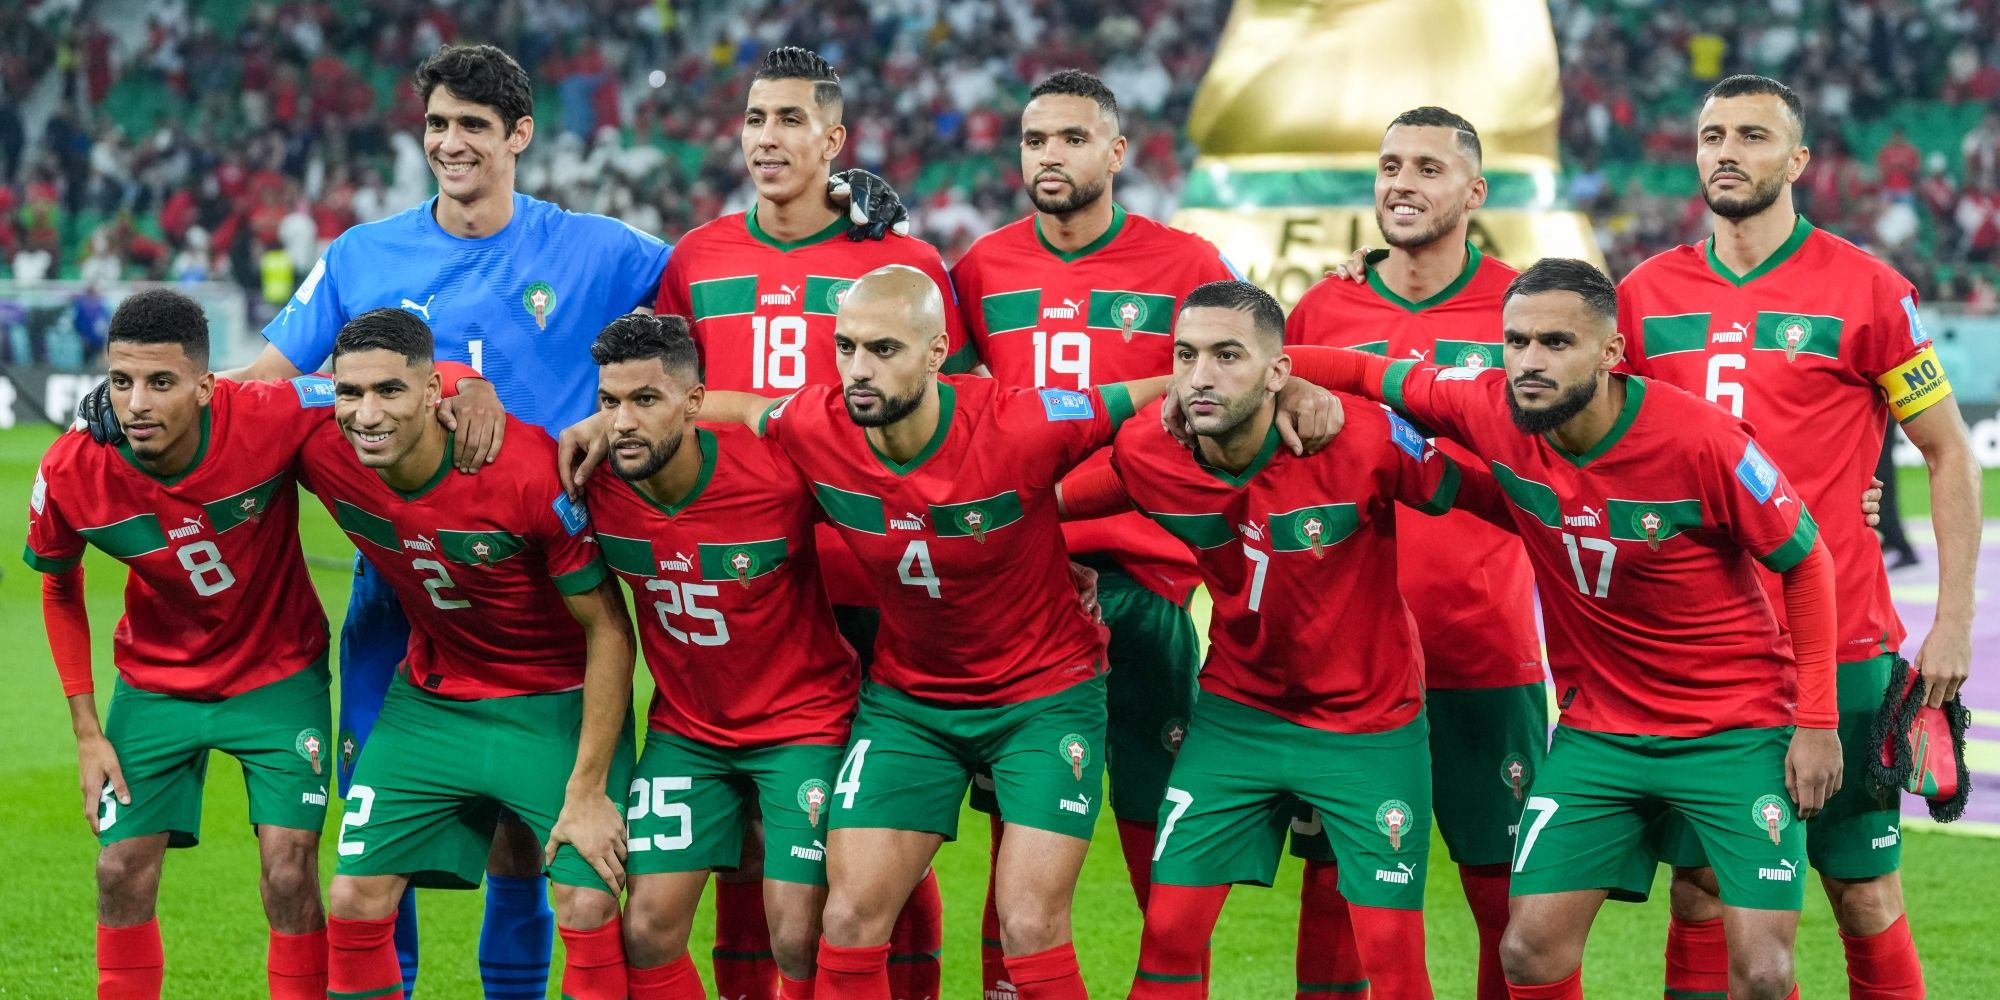 Le Maroc sur le Podium Diplomatique : Stratégie Gagnante avec les Succès Sportifs